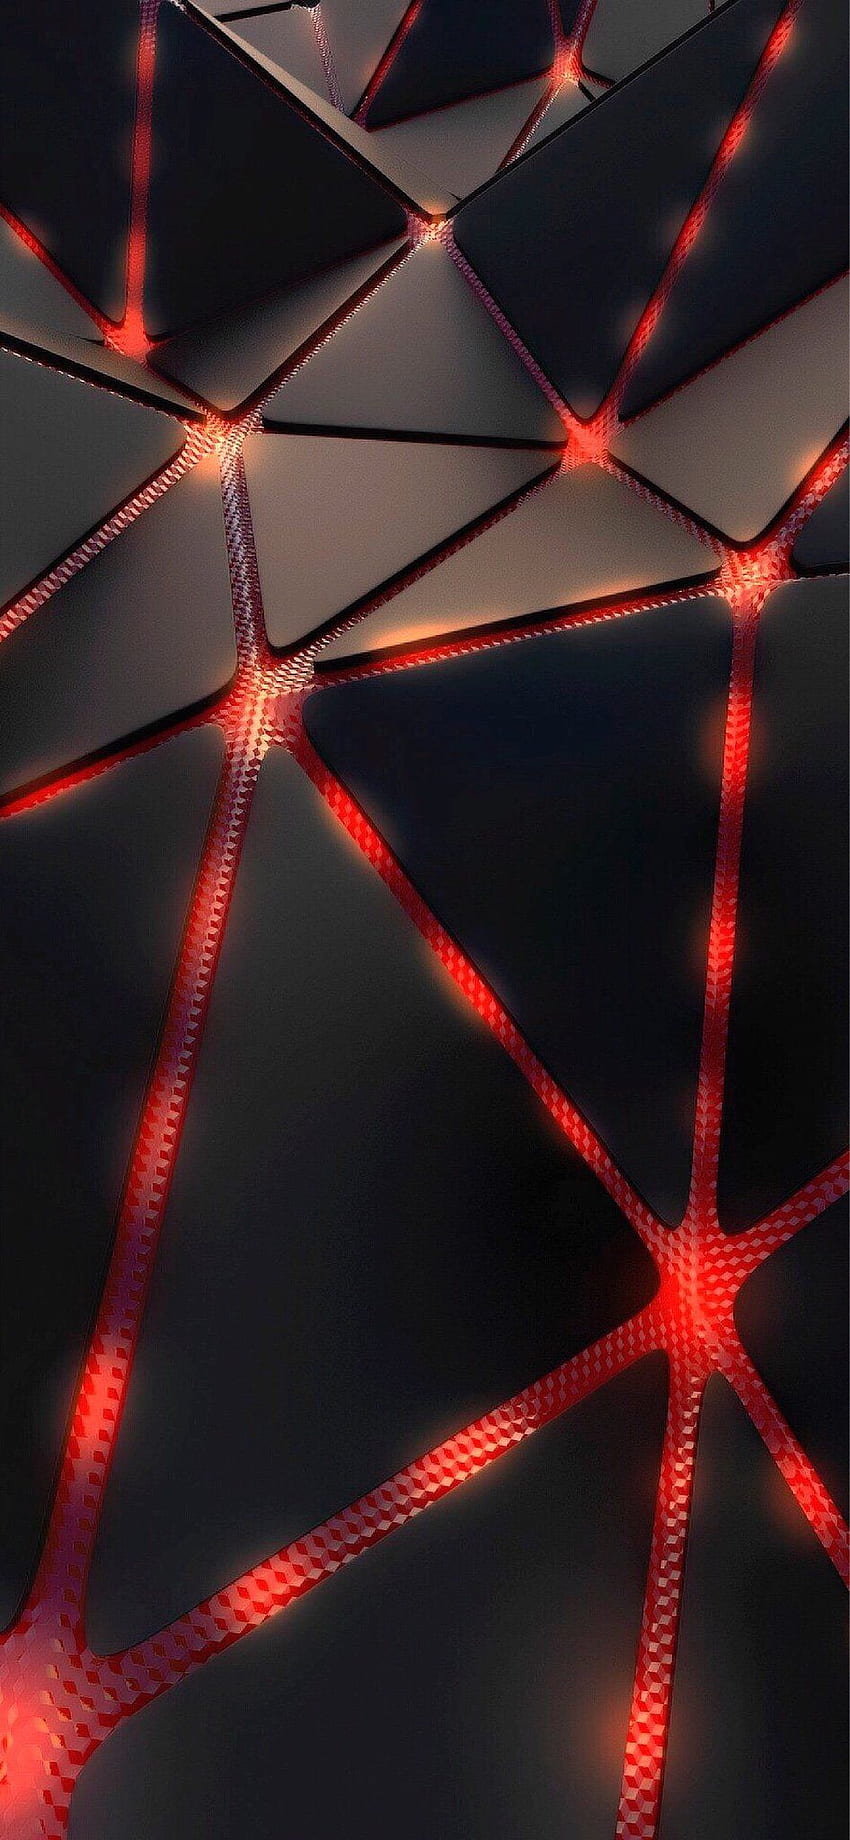 Nantawat inteligente en el iPhone X. Rojo y negro, tecnología, espacio, Modern Black and Red fondo de pantalla del teléfono